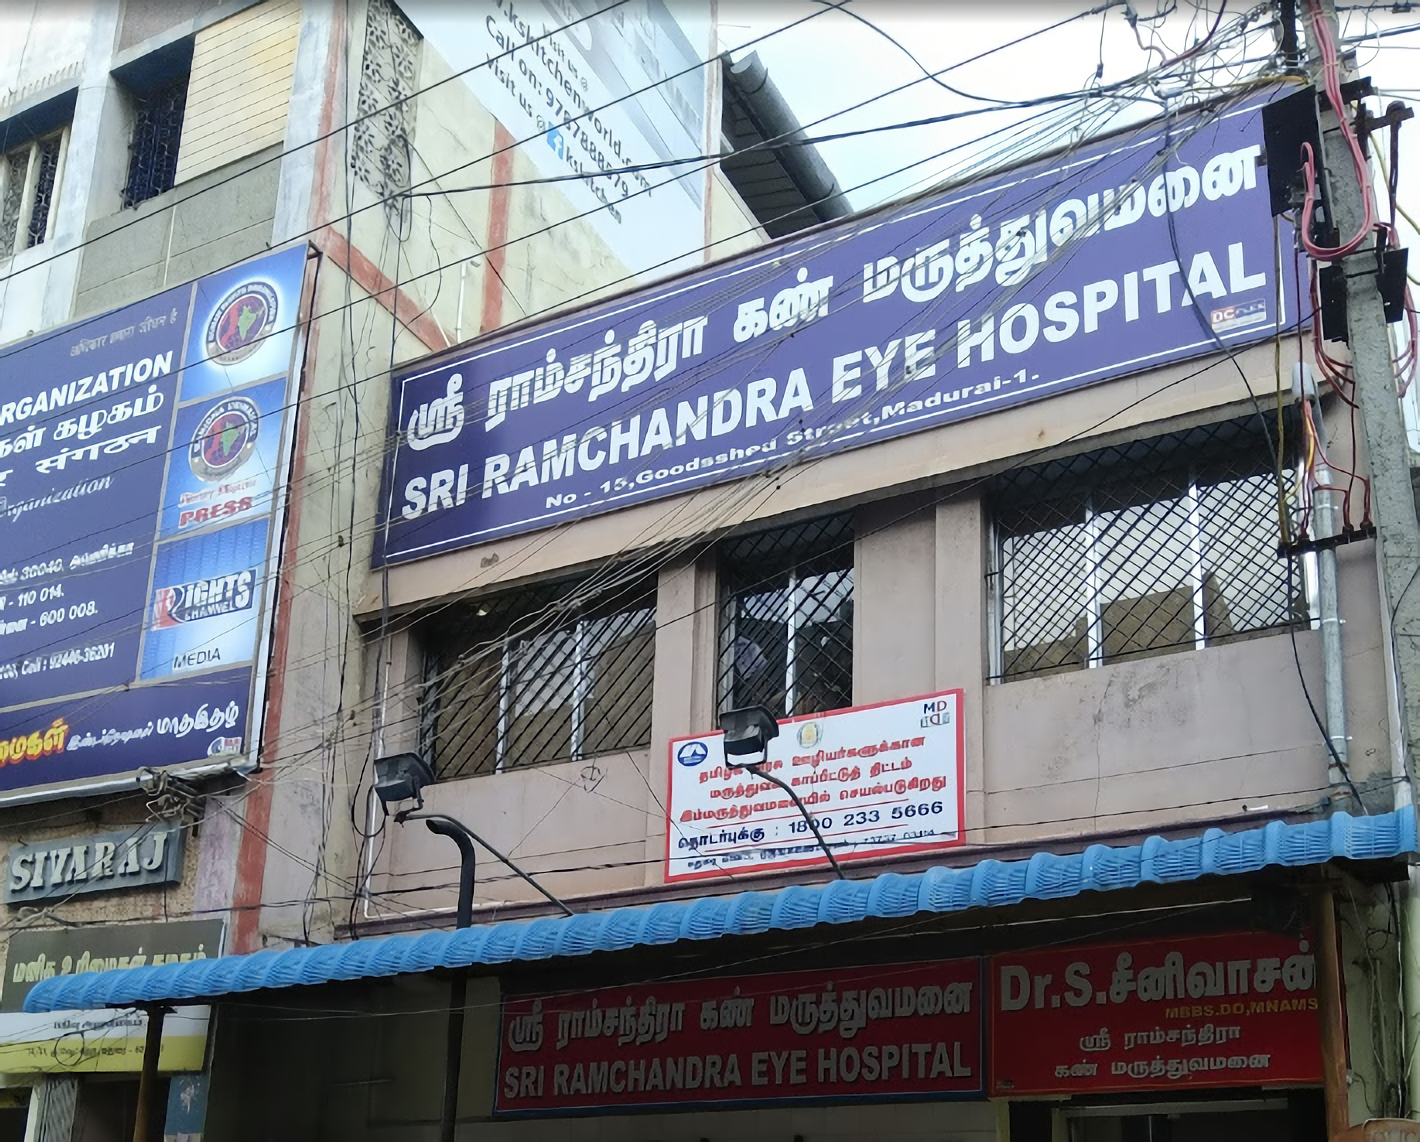 Sri Ramchandra Eye Hospital